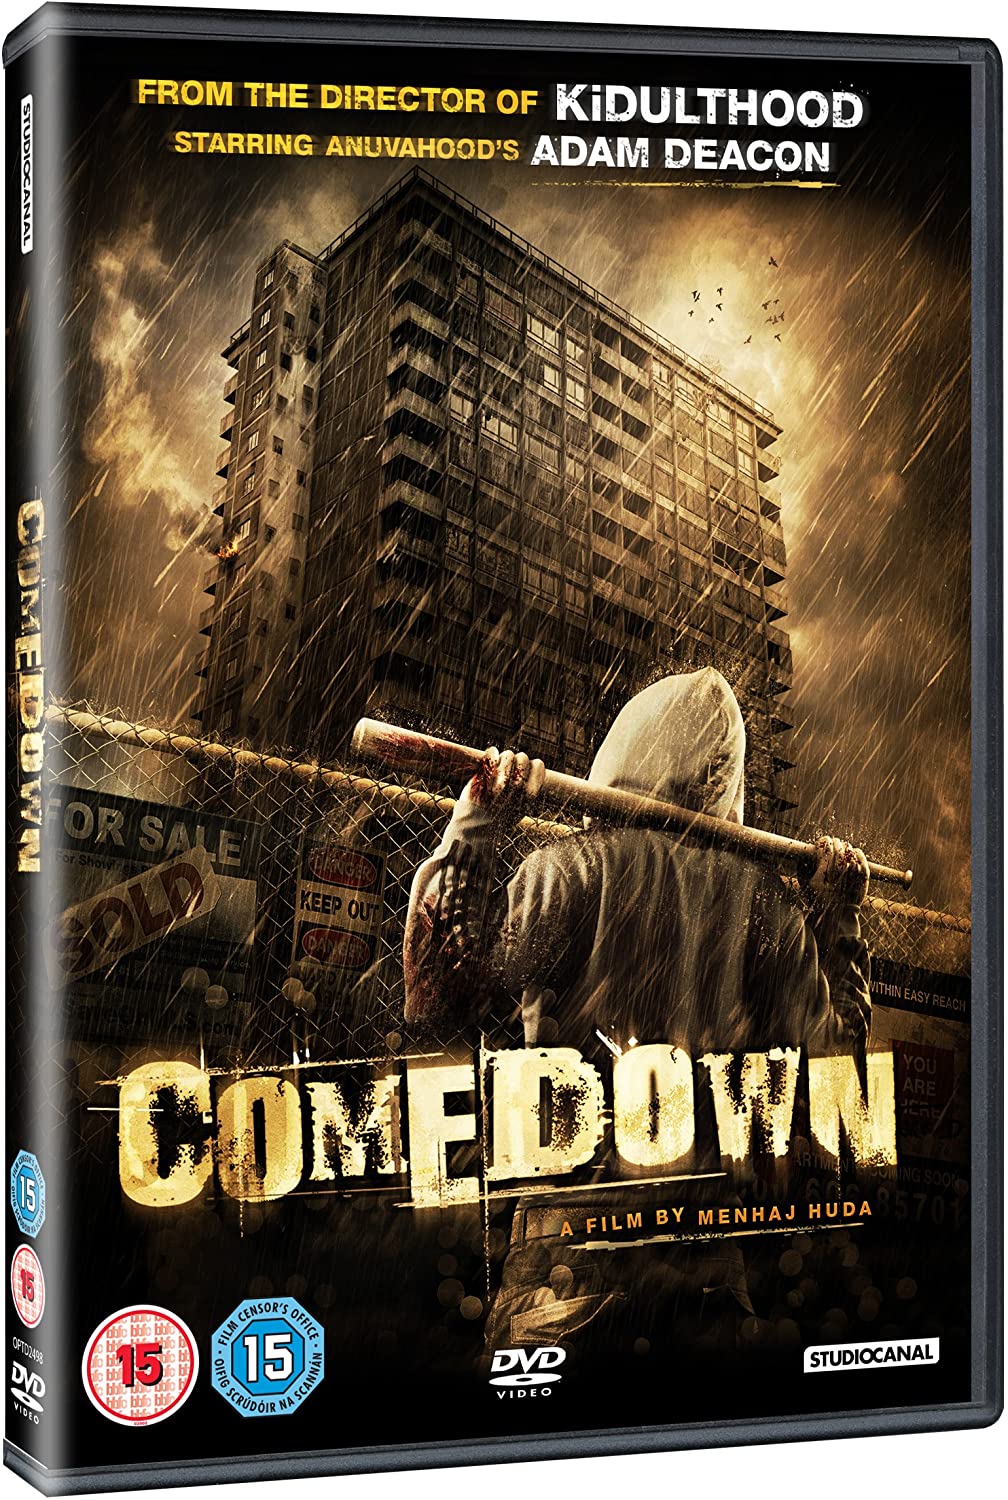 Comedown [2012] - Horror [DVD]